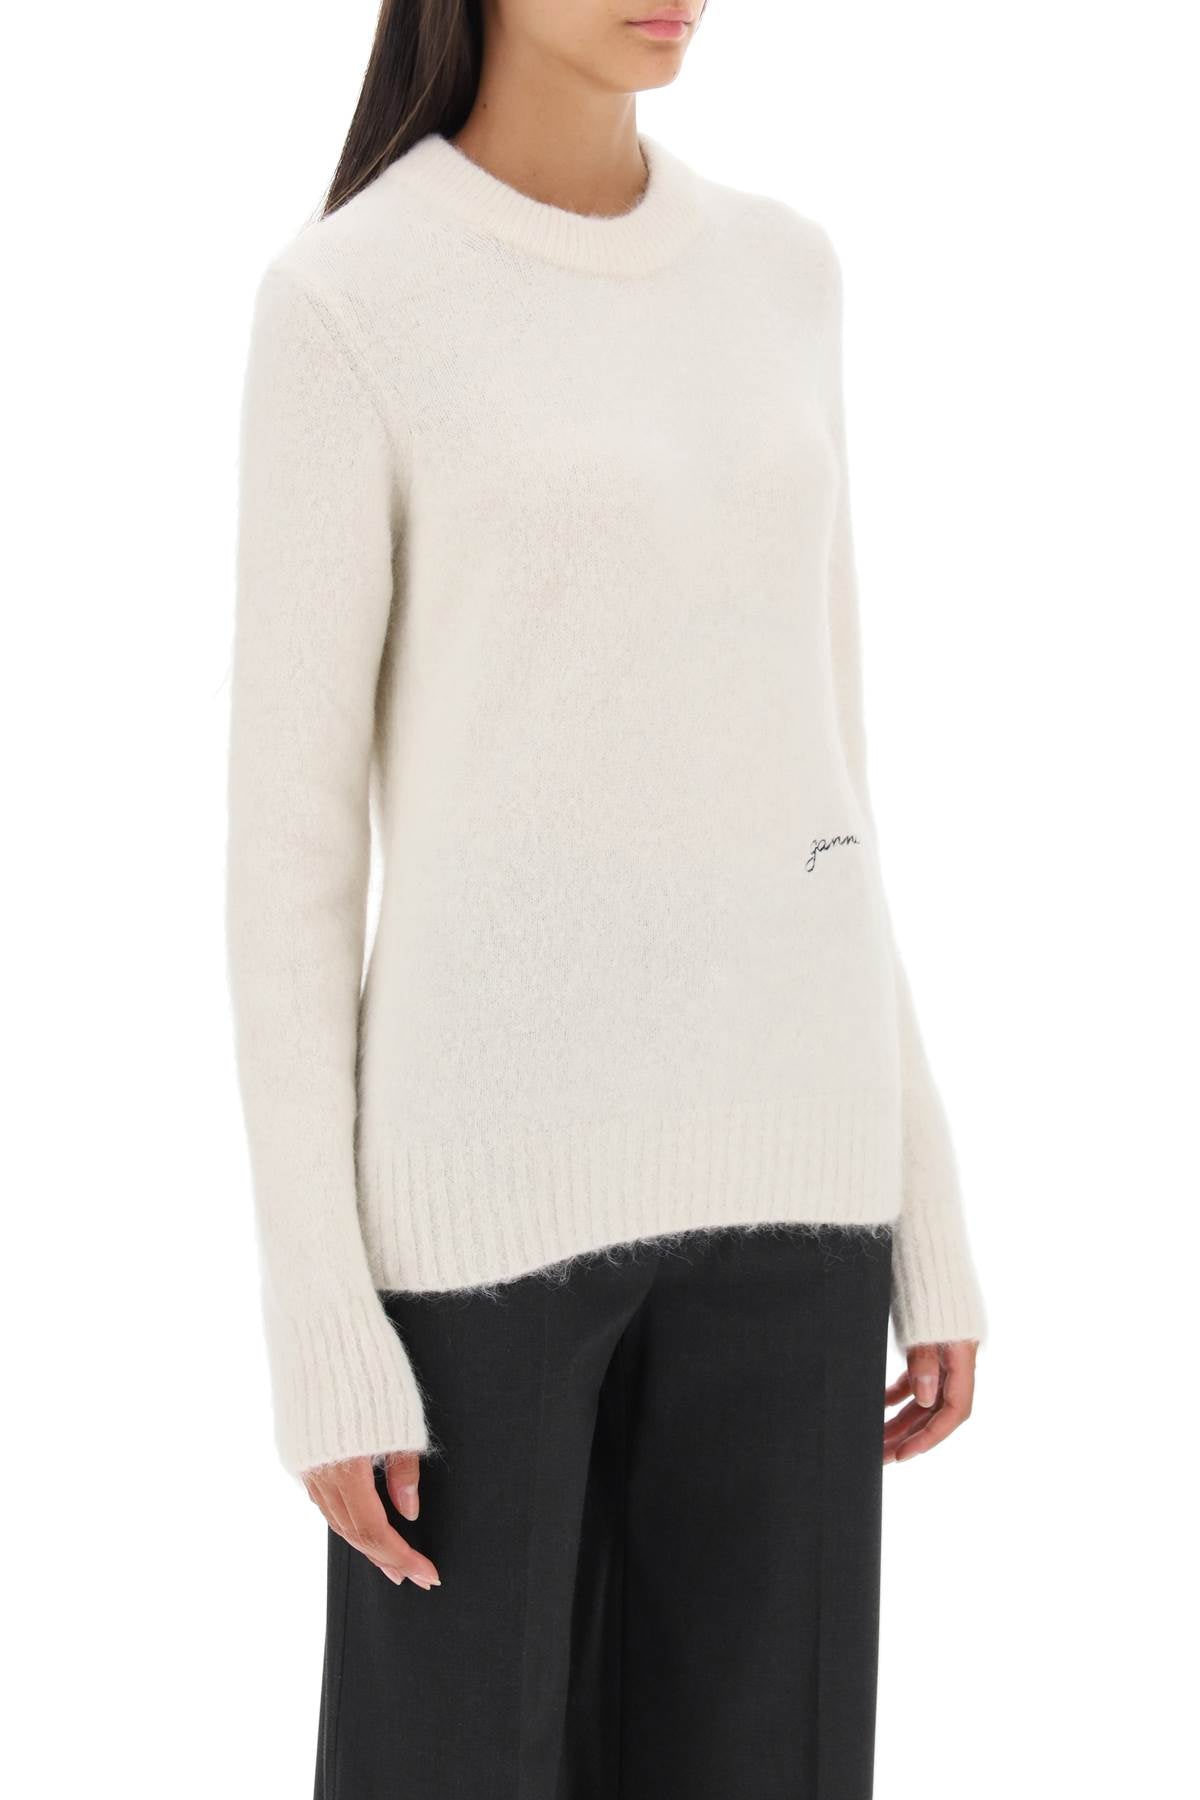 Ganni sweater in brushed alpaca blend-1